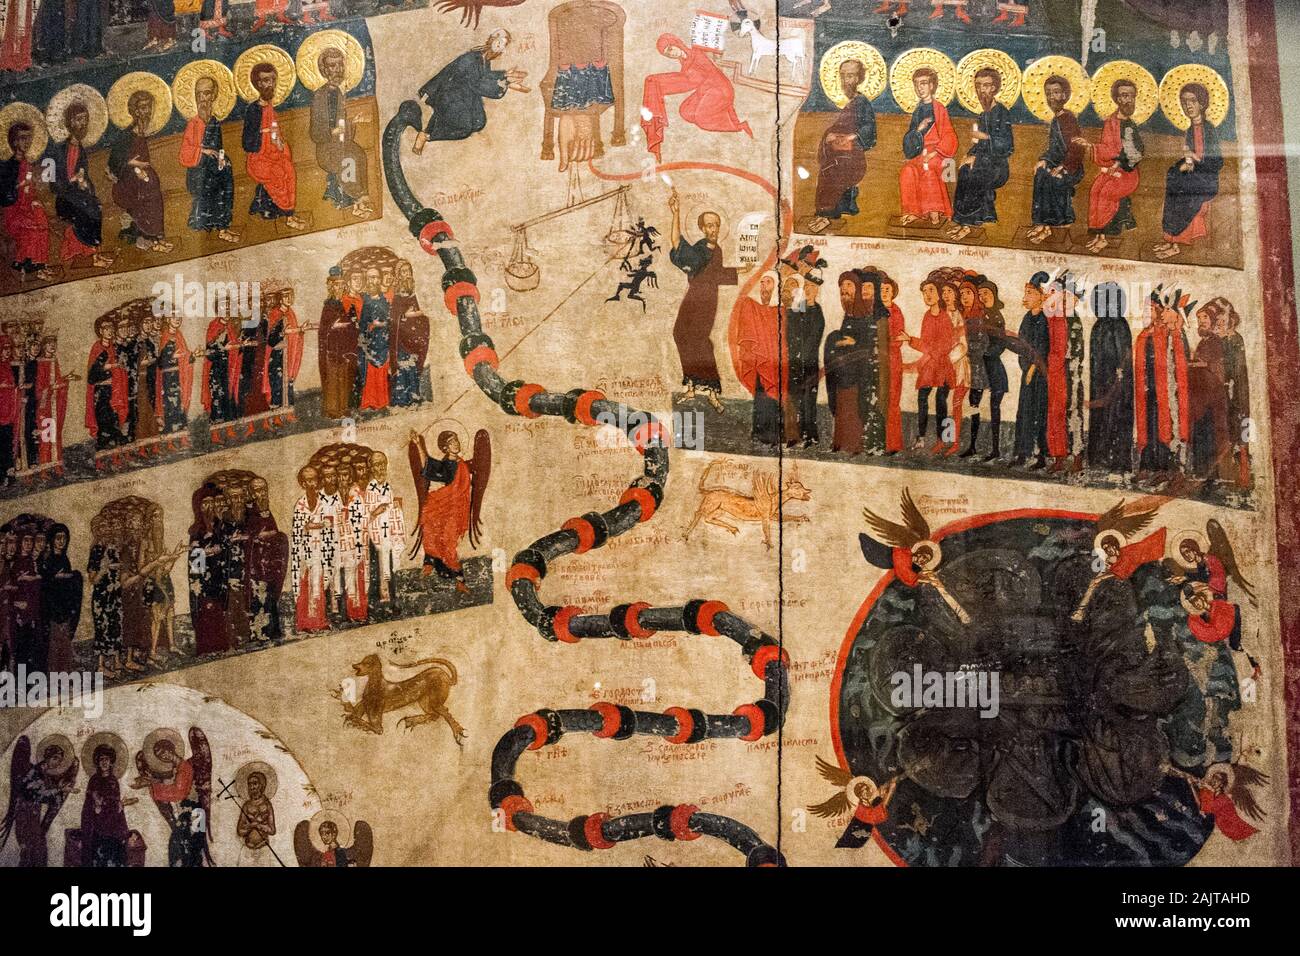 Due pannelli da una mostra sull'arte ortodossa nella vecchia Repubblica polacca, il Palazzo del Vescovo, Cracovia, in Polonia. Pannelli mostra sentenza nell'aldilà. Foto Stock